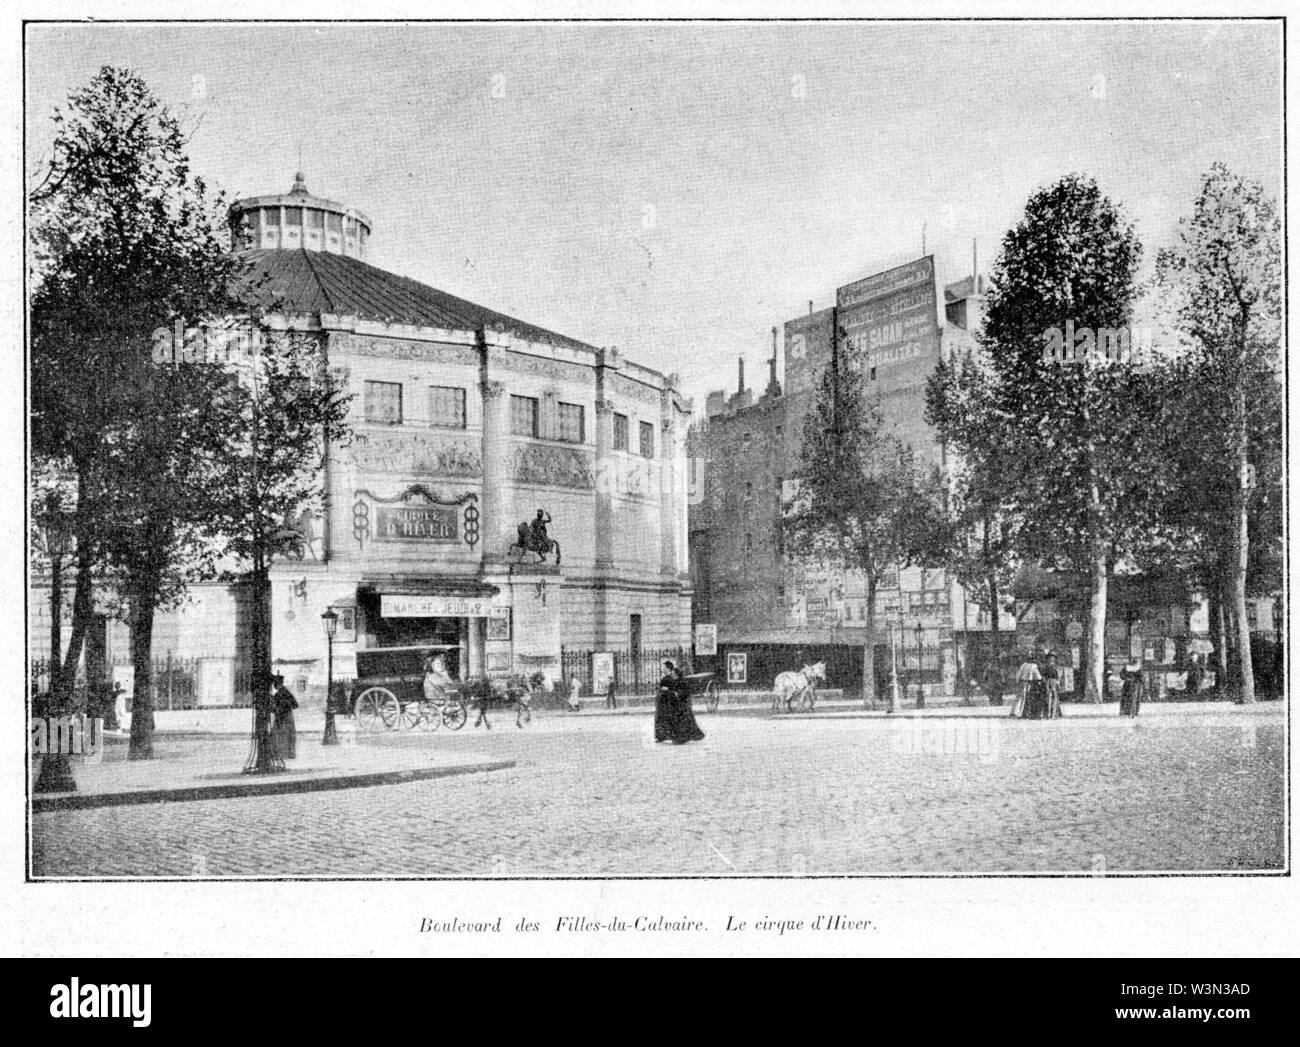 Clément Maurice Paris en plein air, BUC, 1897,152 Boulevard des Filles du Calvaire. Le Cirque d'Hiver. Foto Stock